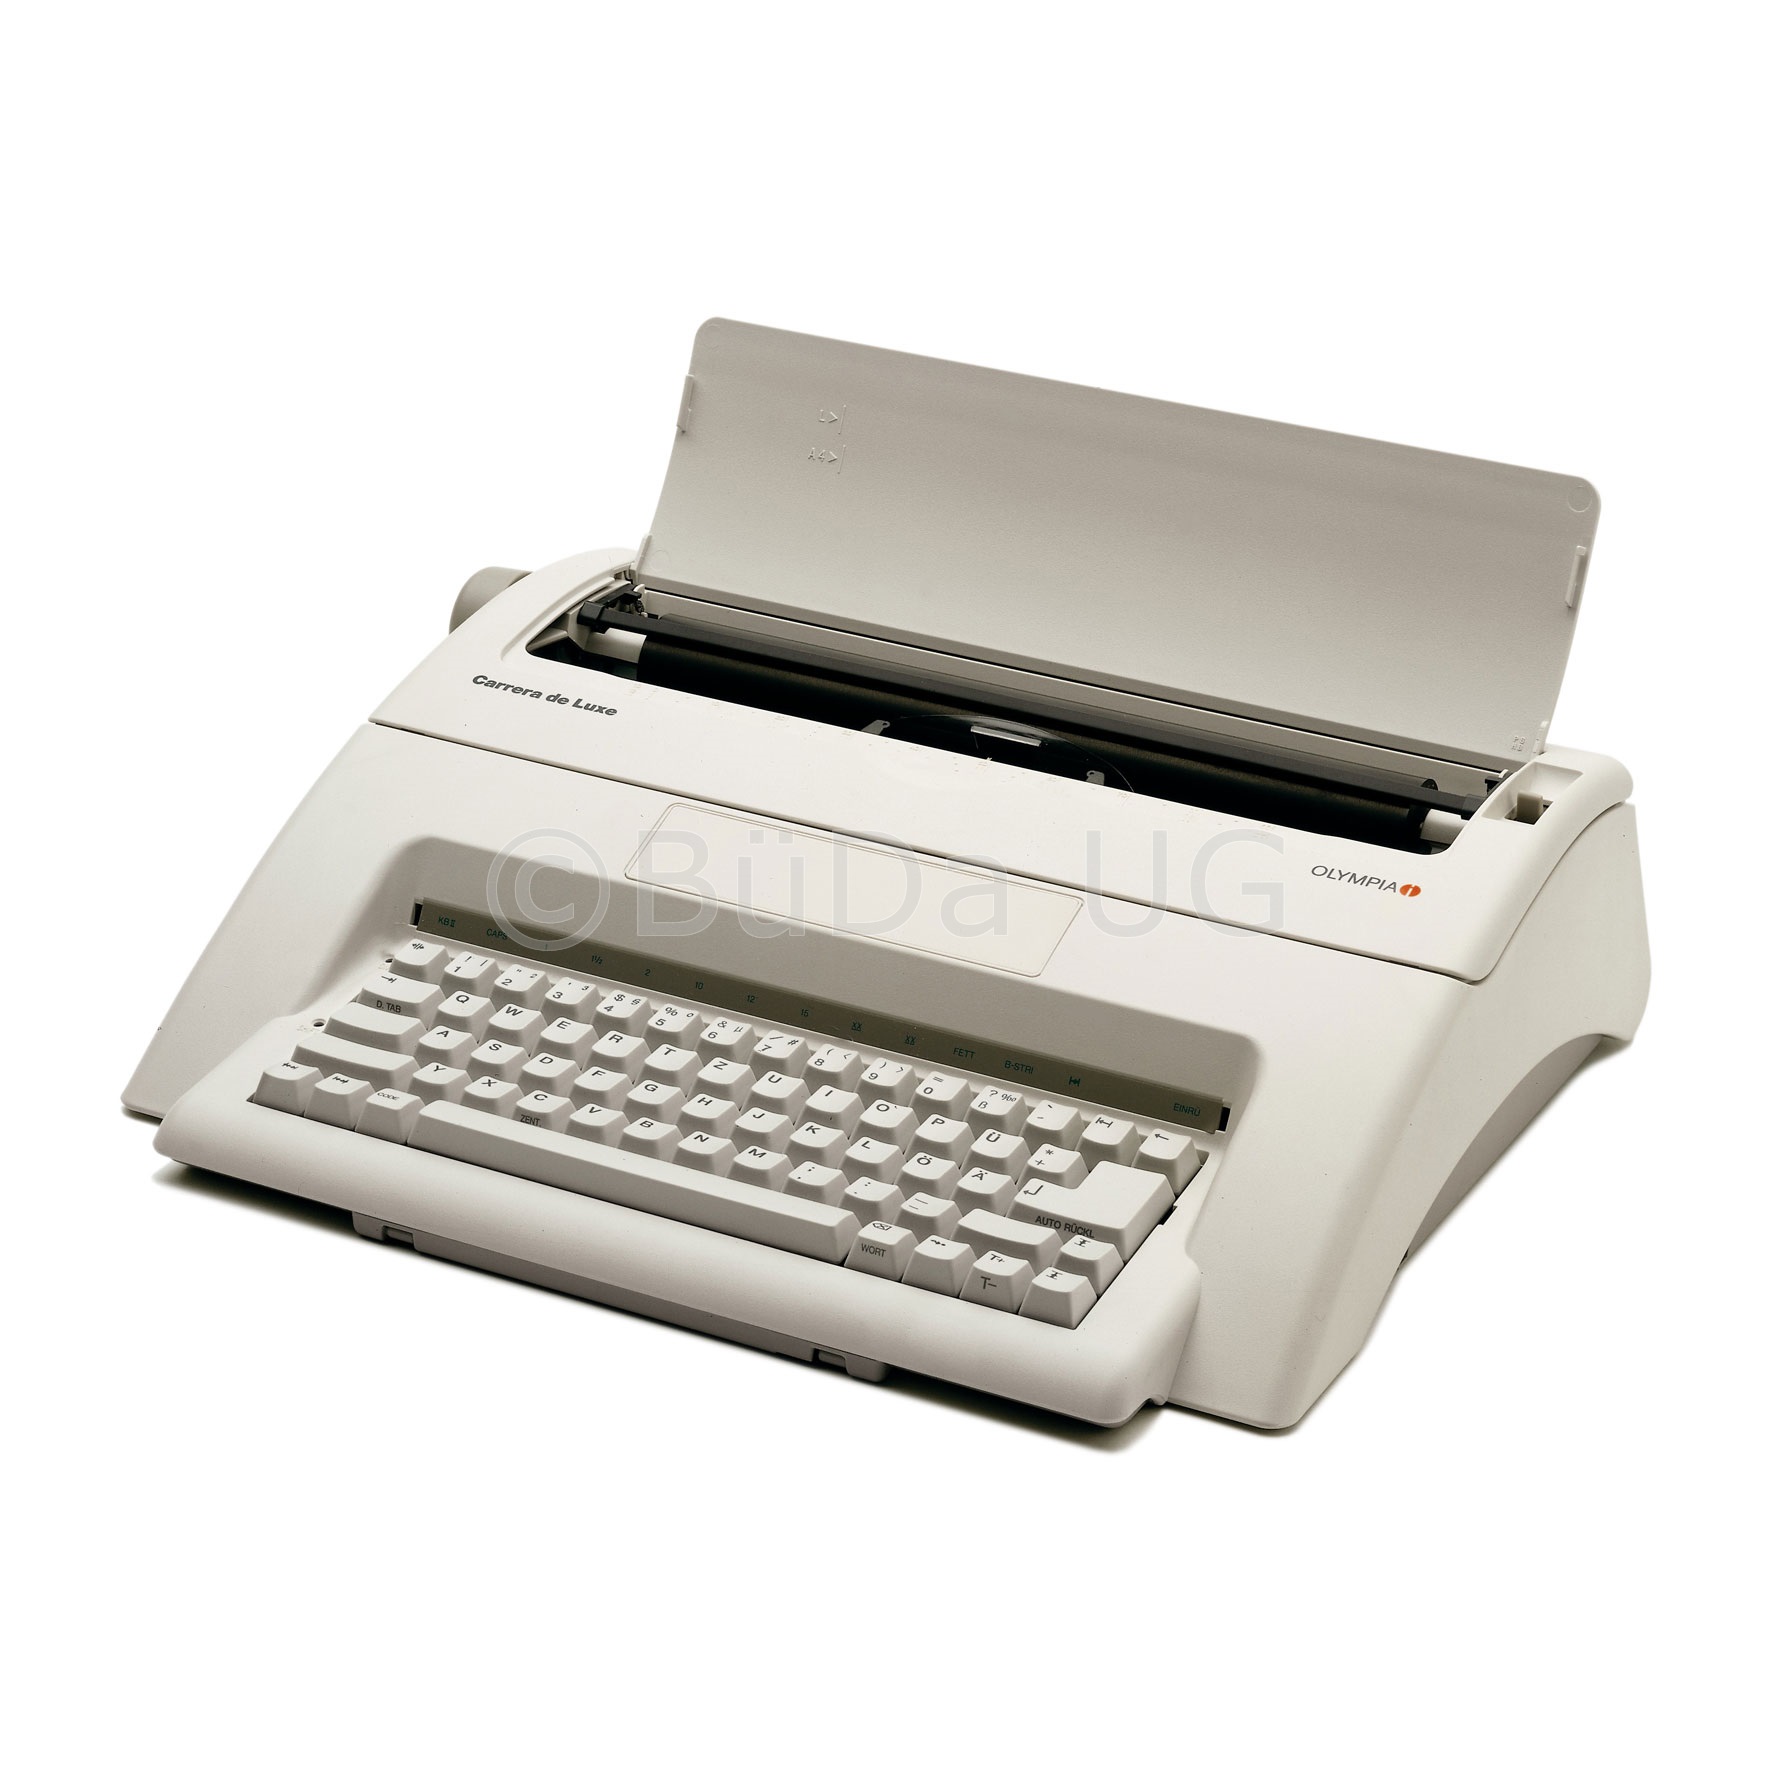 Elektronische Schreibmaschine Modell Olympia Carrera de luxe


12 Monate Garantie